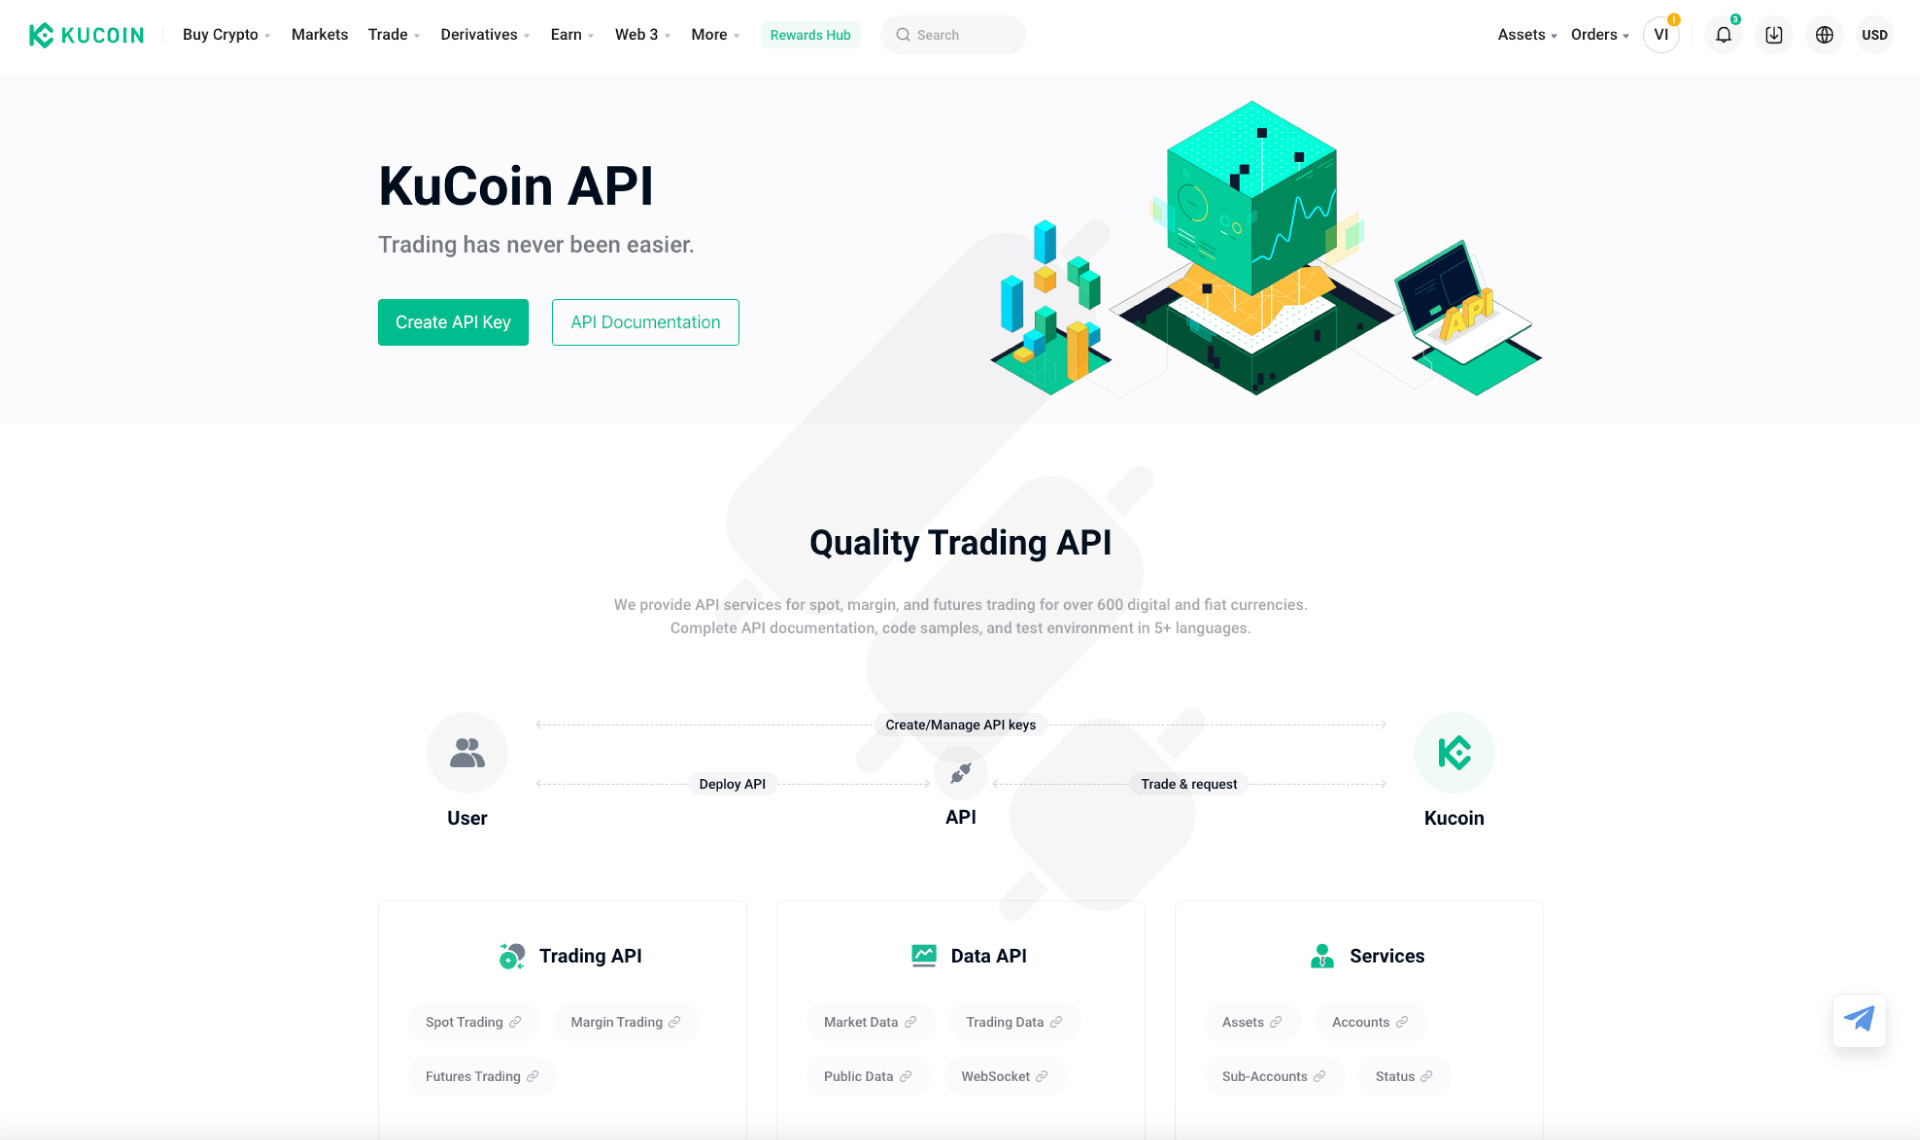 How to generate Kucoin API